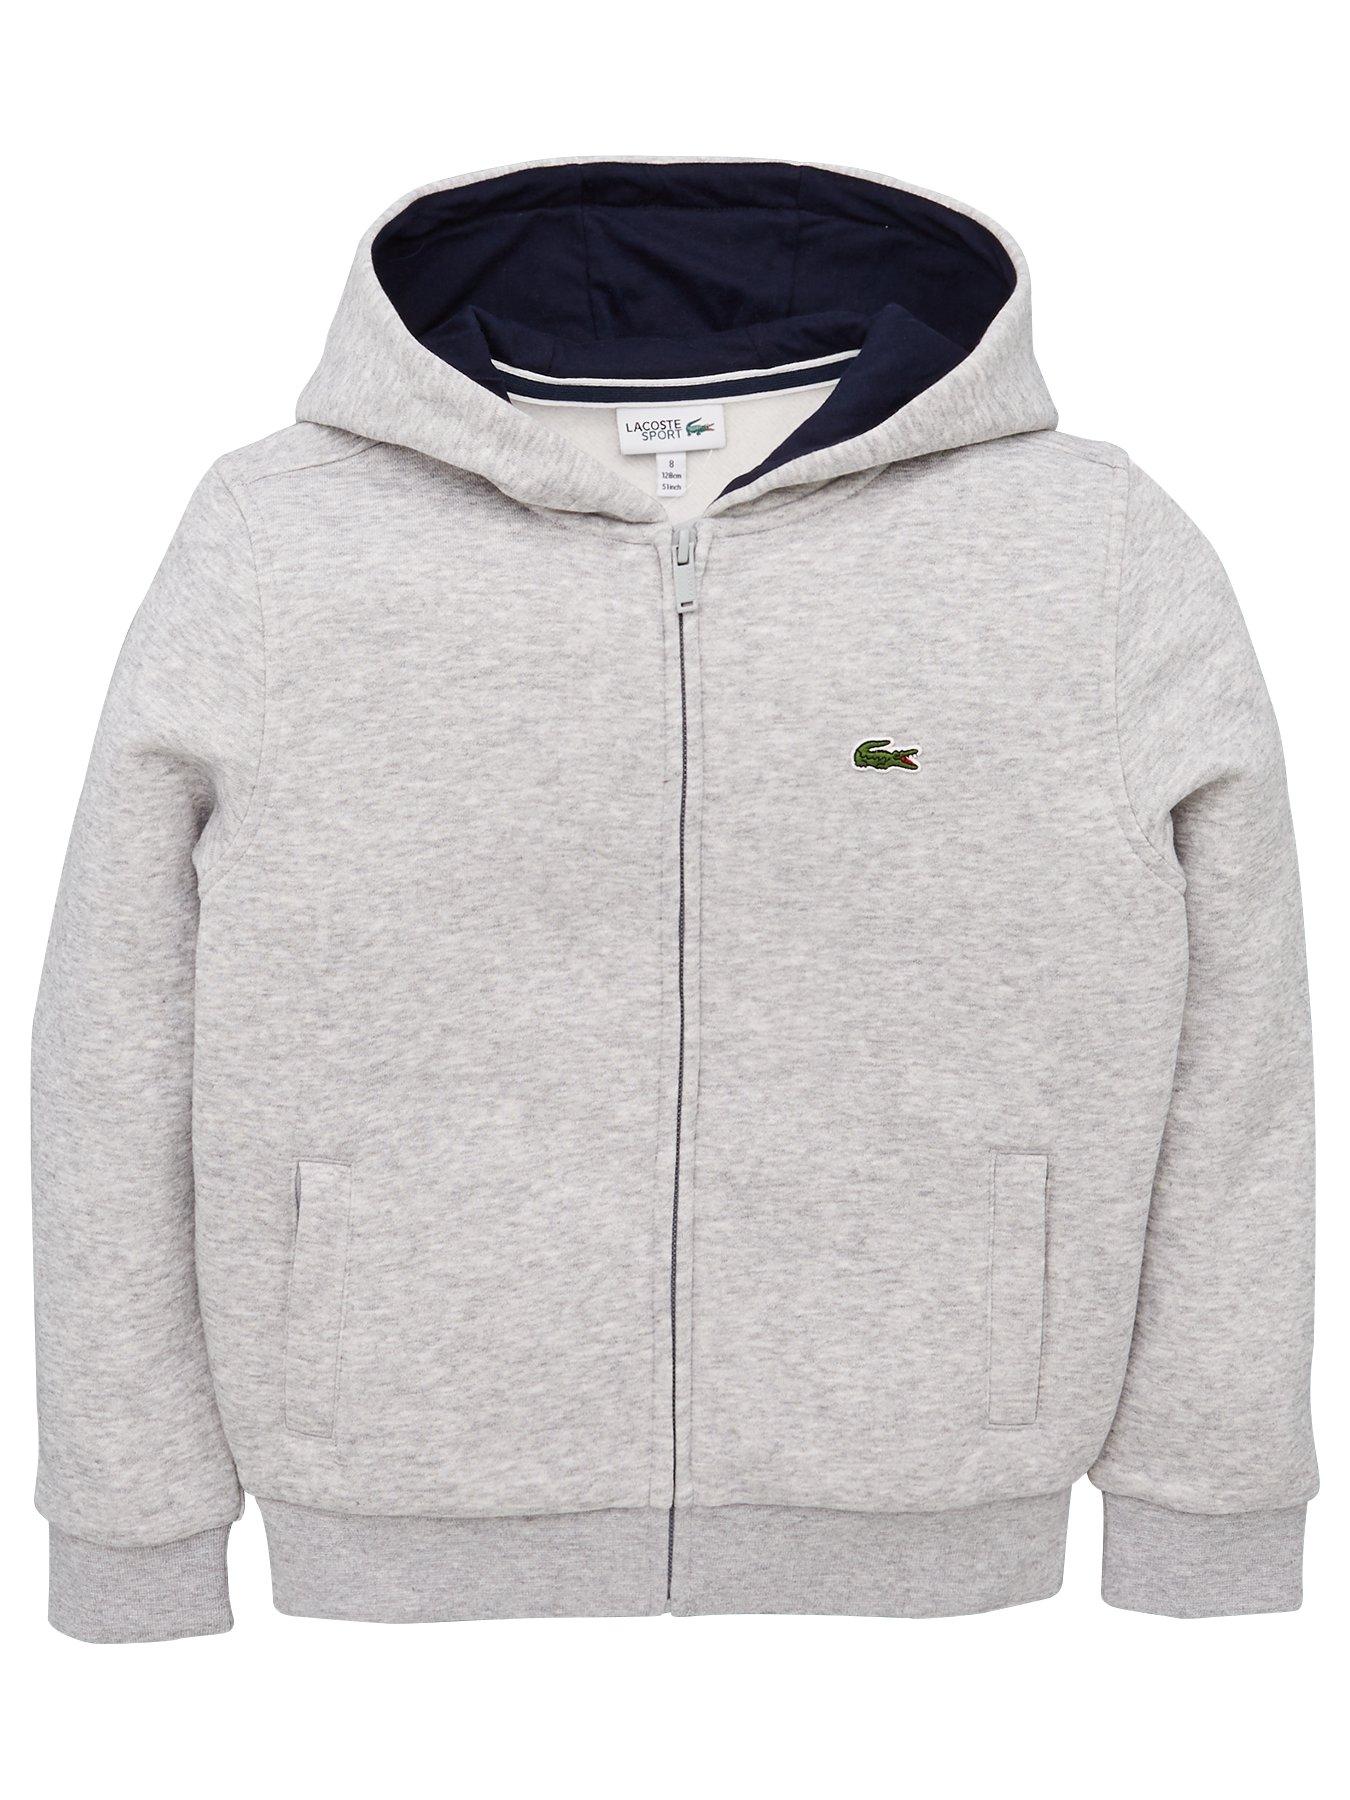 lacoste grey zip up hoodie